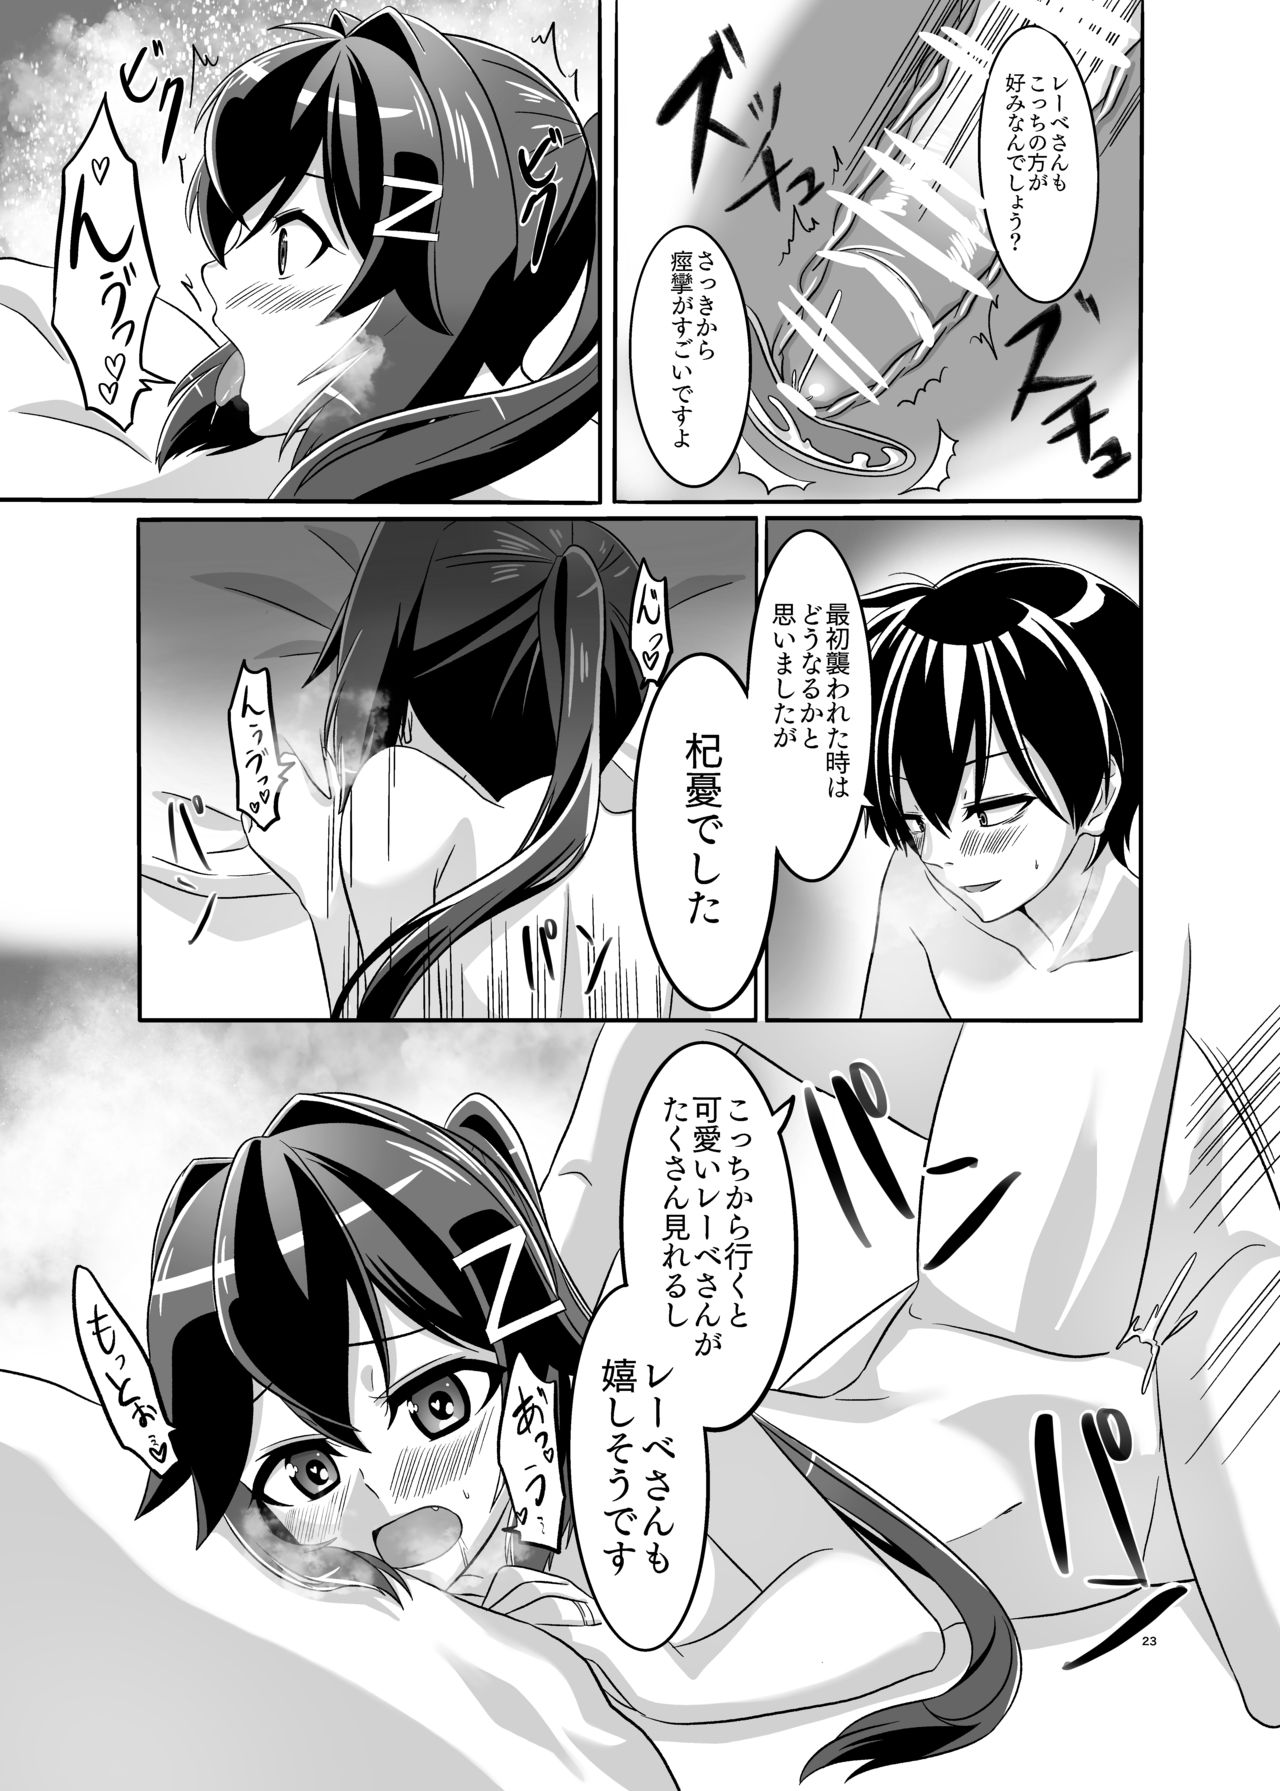 [Torutī-ya] Itsumo no yoru futari no yotogi⑴ (Warship Girls R) page 24 full